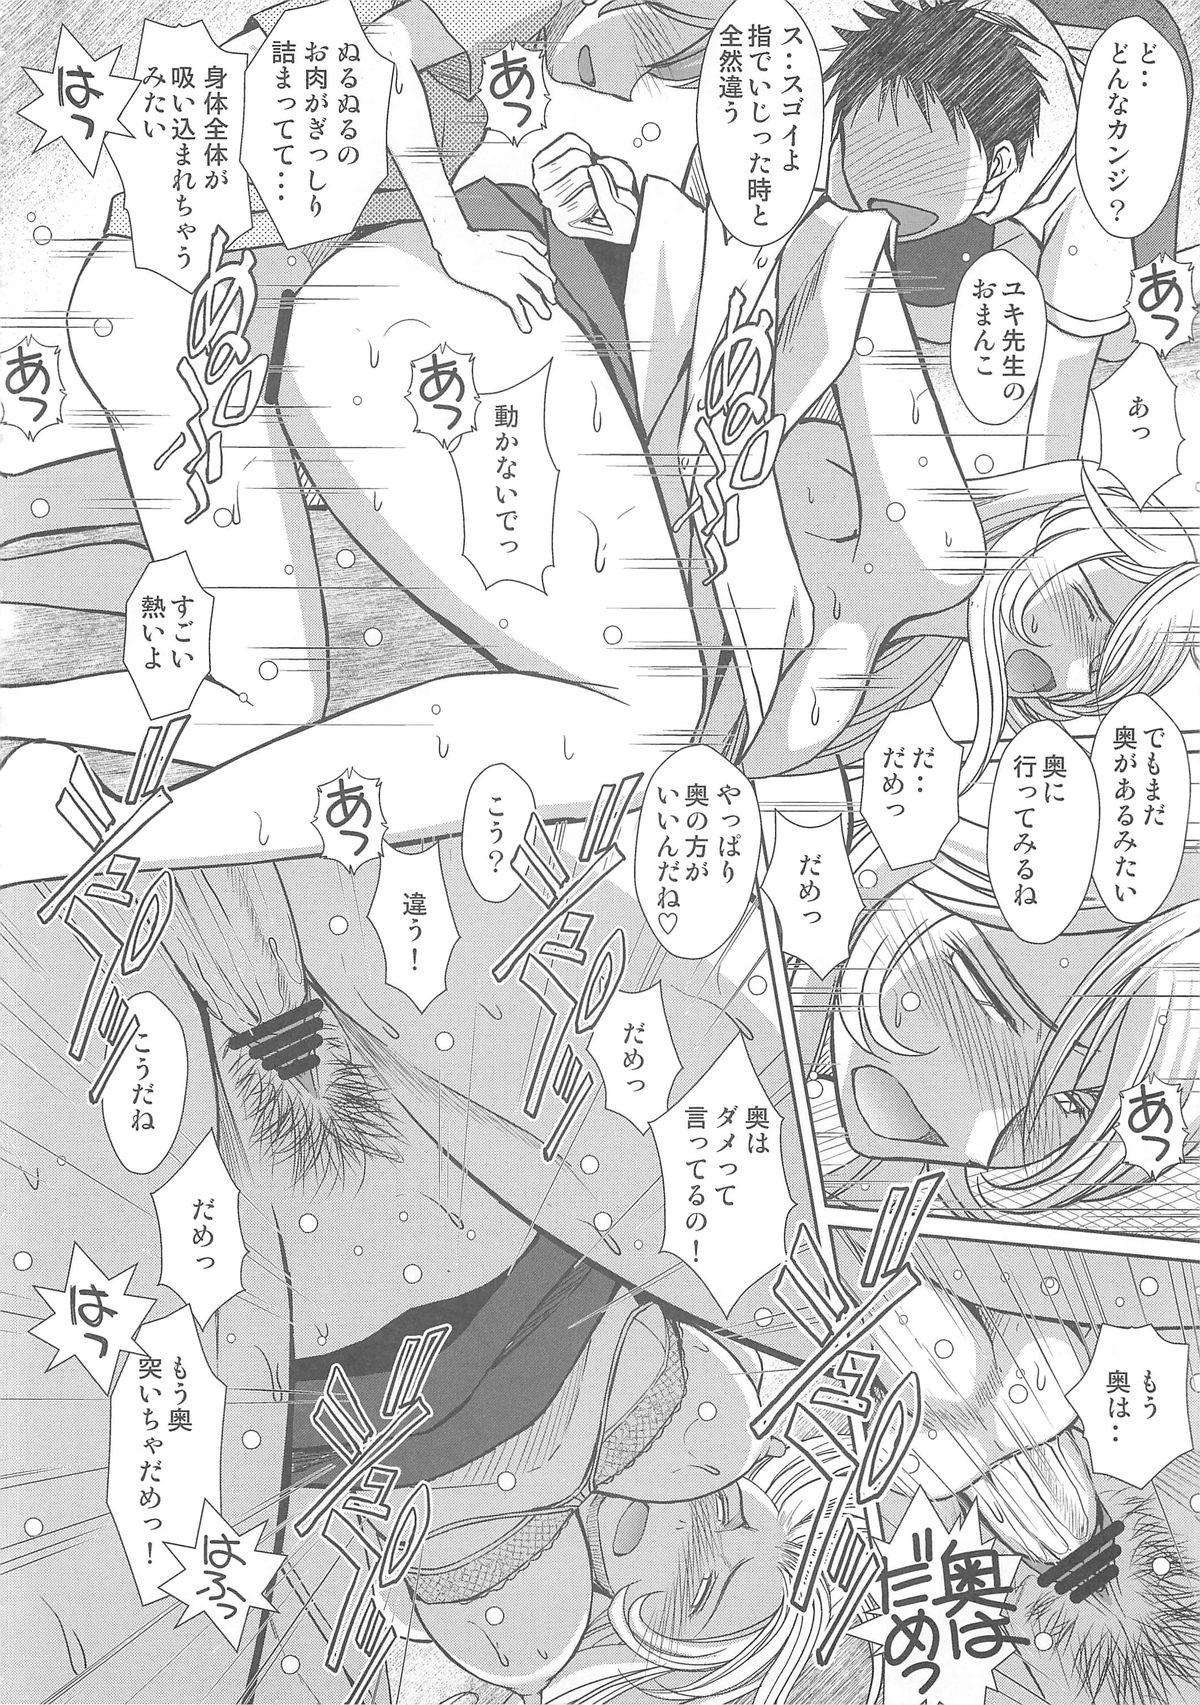 Ball Busting 2199-nen no Mori Yuki - Space battleship yamato Pick Up - Page 11